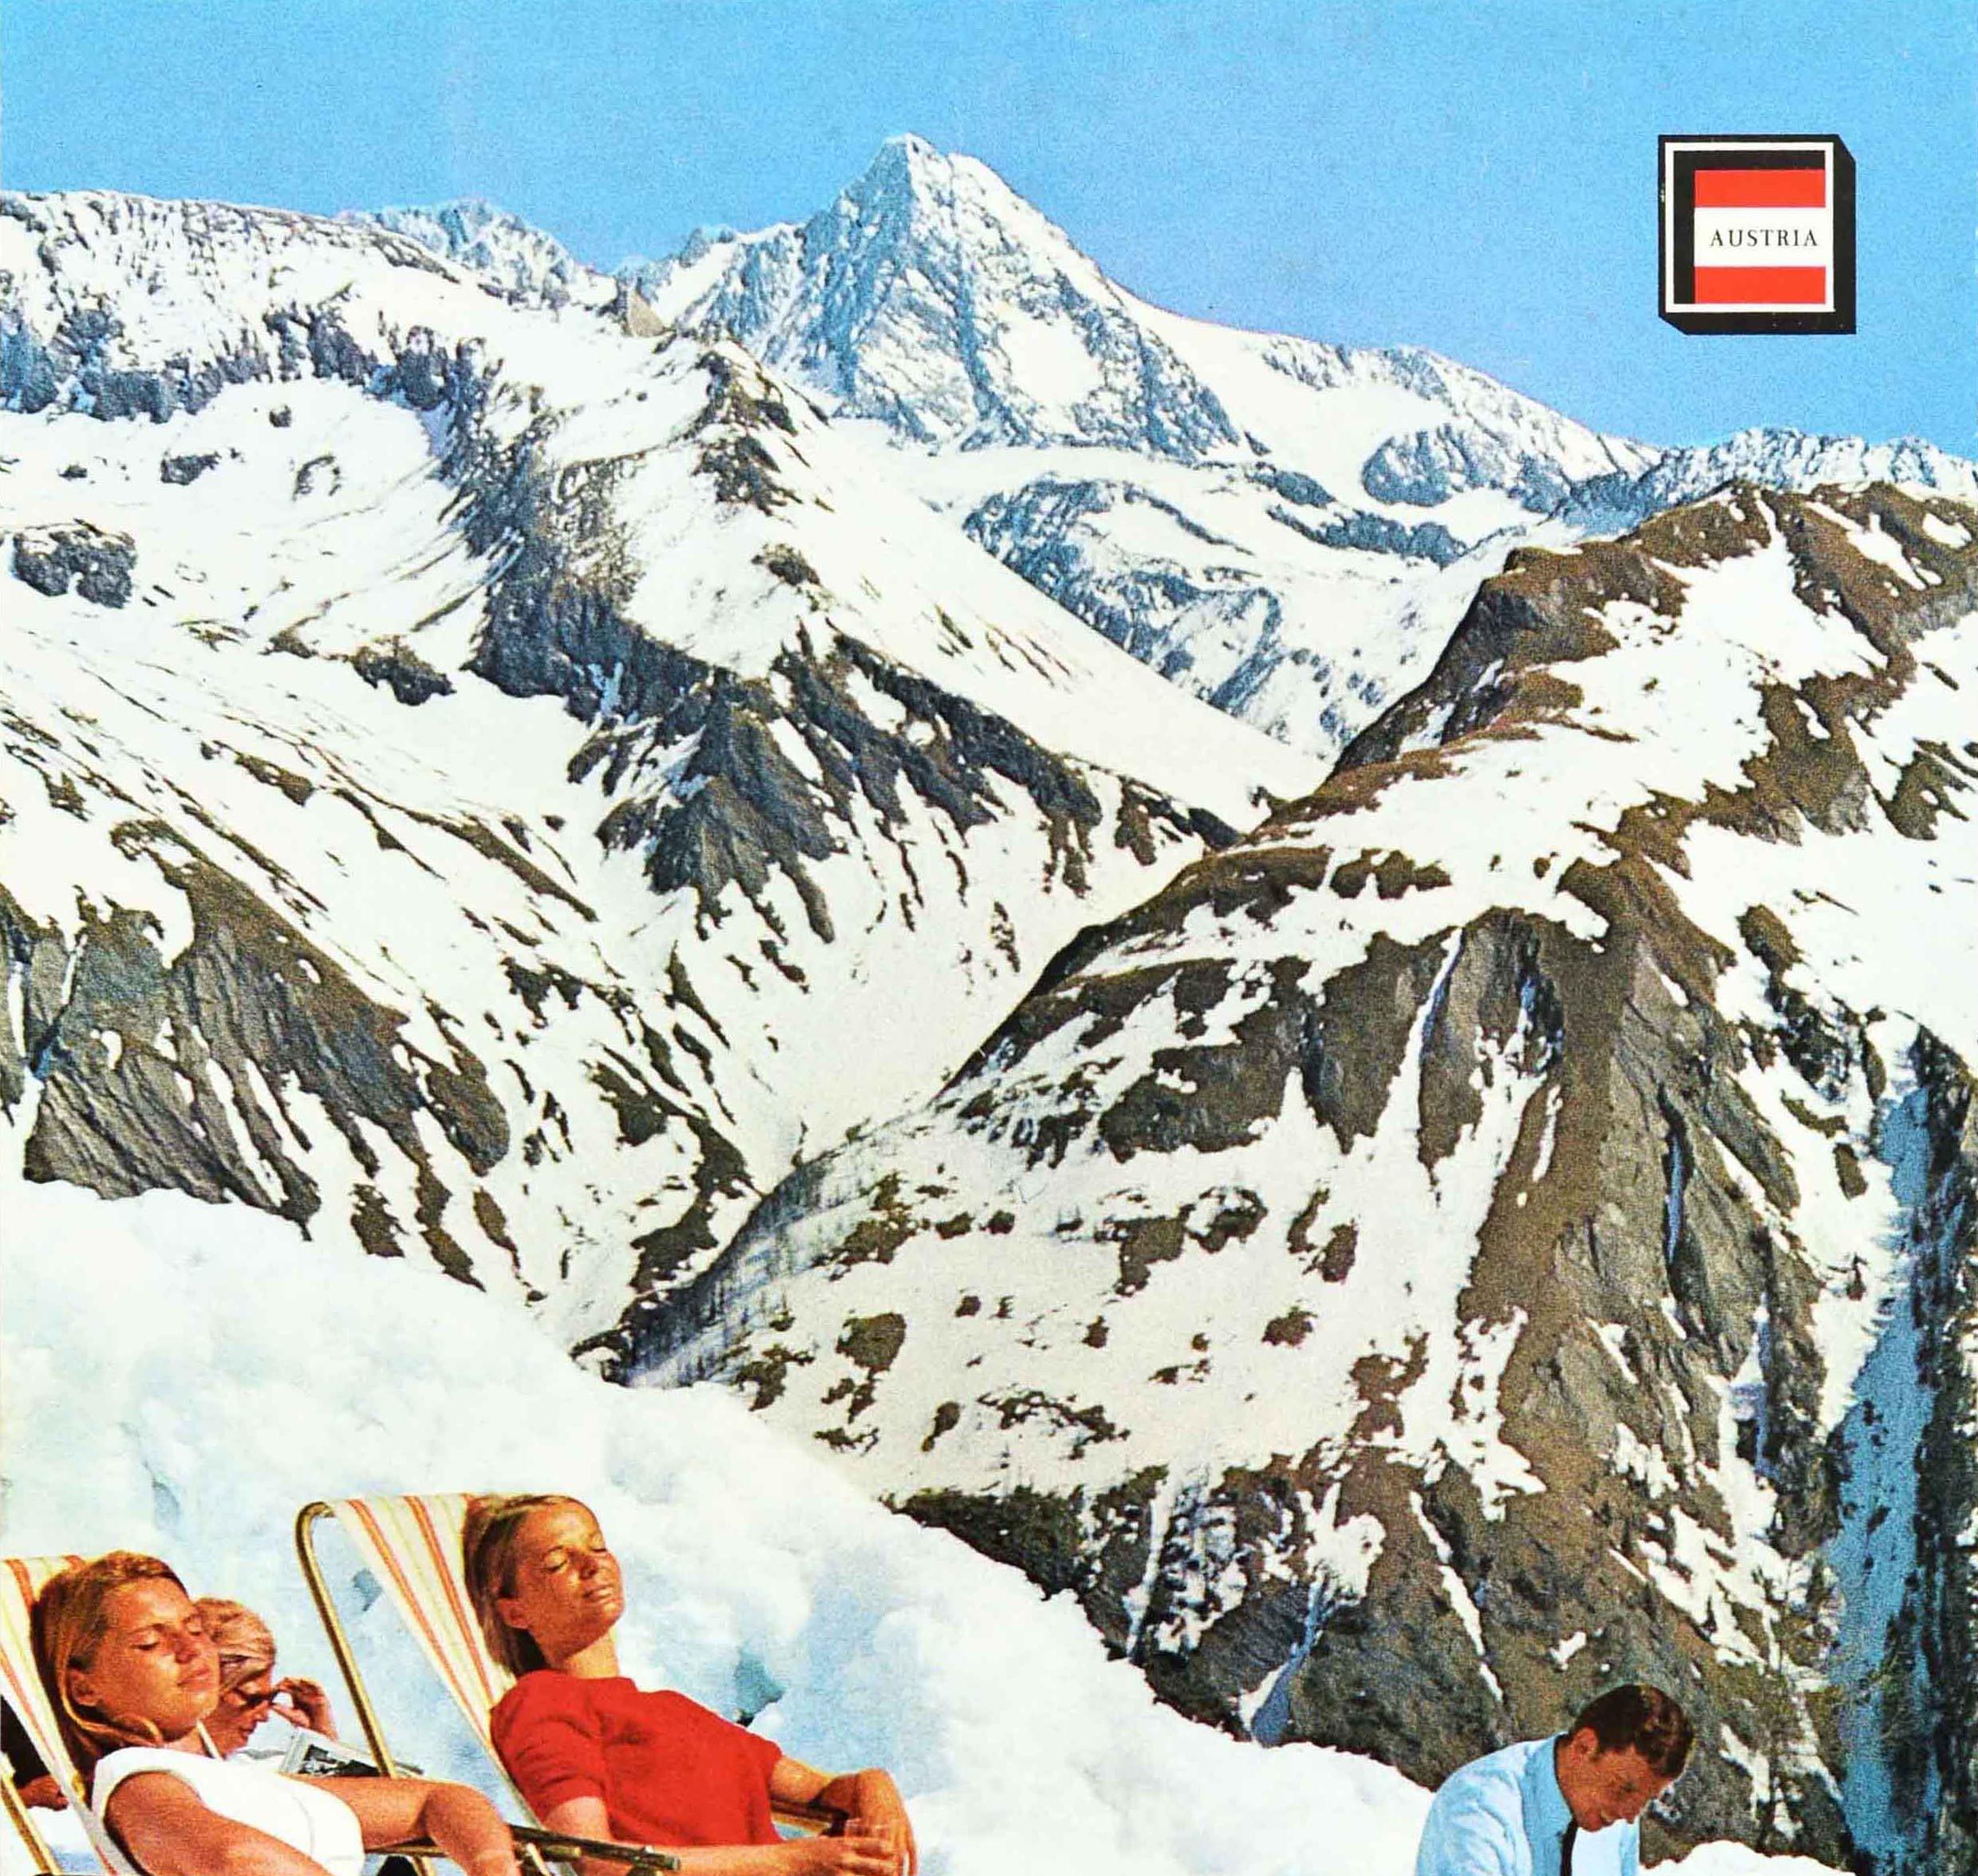 Original Vintage-Wintersport-Reiseplakat für Österreich Österreich mit Skifahrern, die sich auf Liegestühlen im dicken Schnee entspannen und sonnen, mit T-Shirts und Skistiefeln, mit einem lächelnden Mann, der einer Dame hinter Flaschen im Schnee